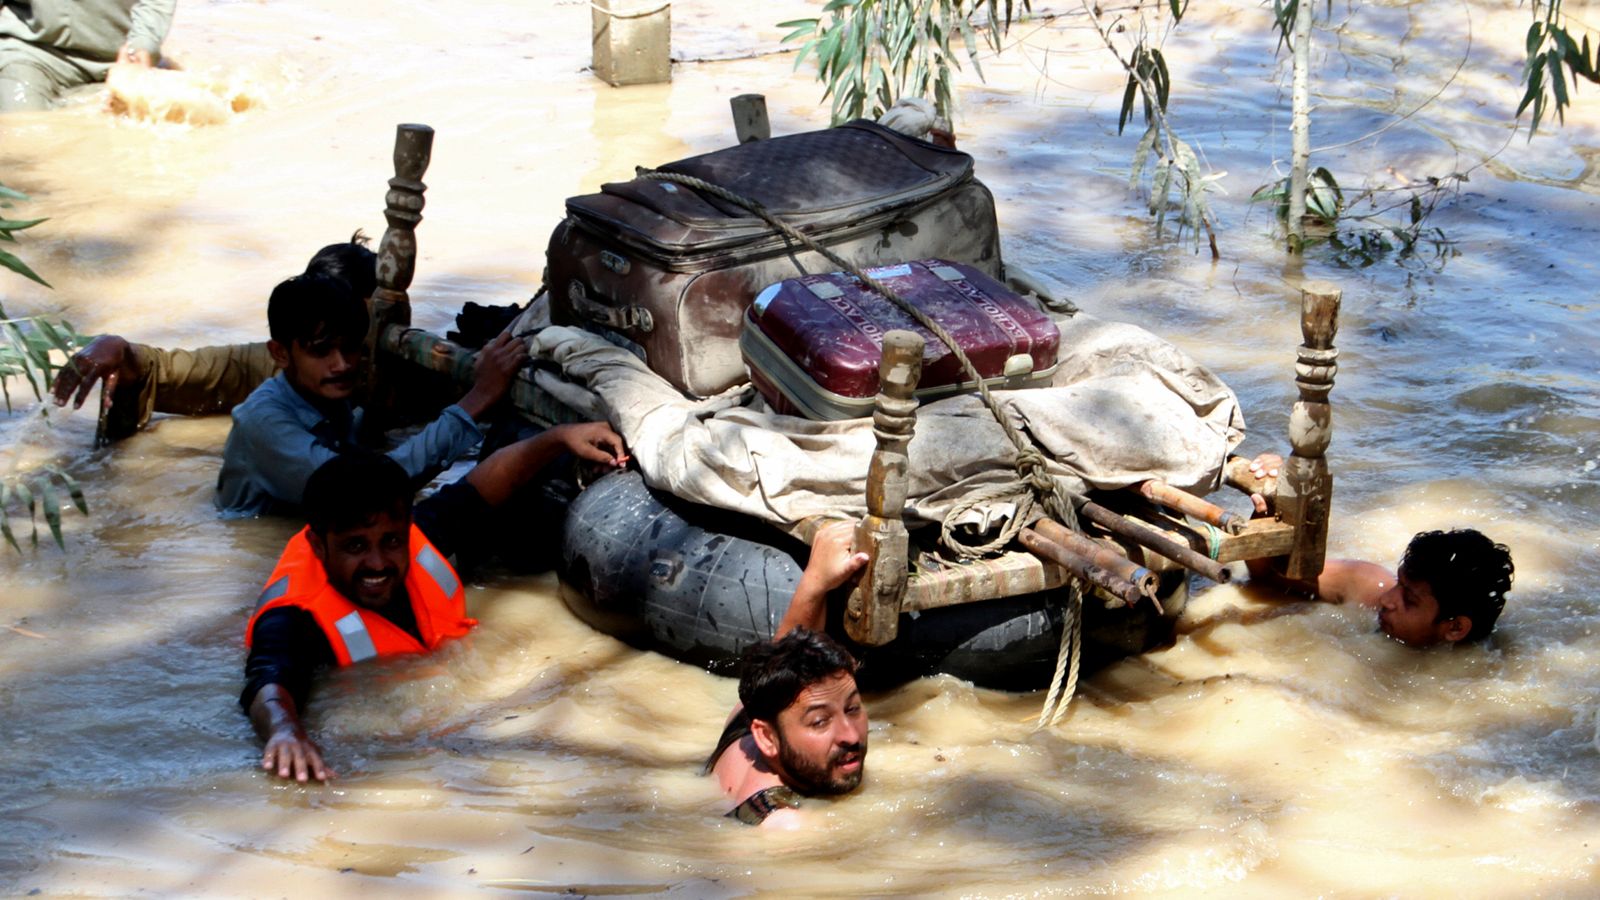 فيضانات باكستان: “الرياح الموسمية الوحشية” تودي بحياة أكثر من 1000 ، راني يقول “حزينًا للغاية” |  اخبار العالم